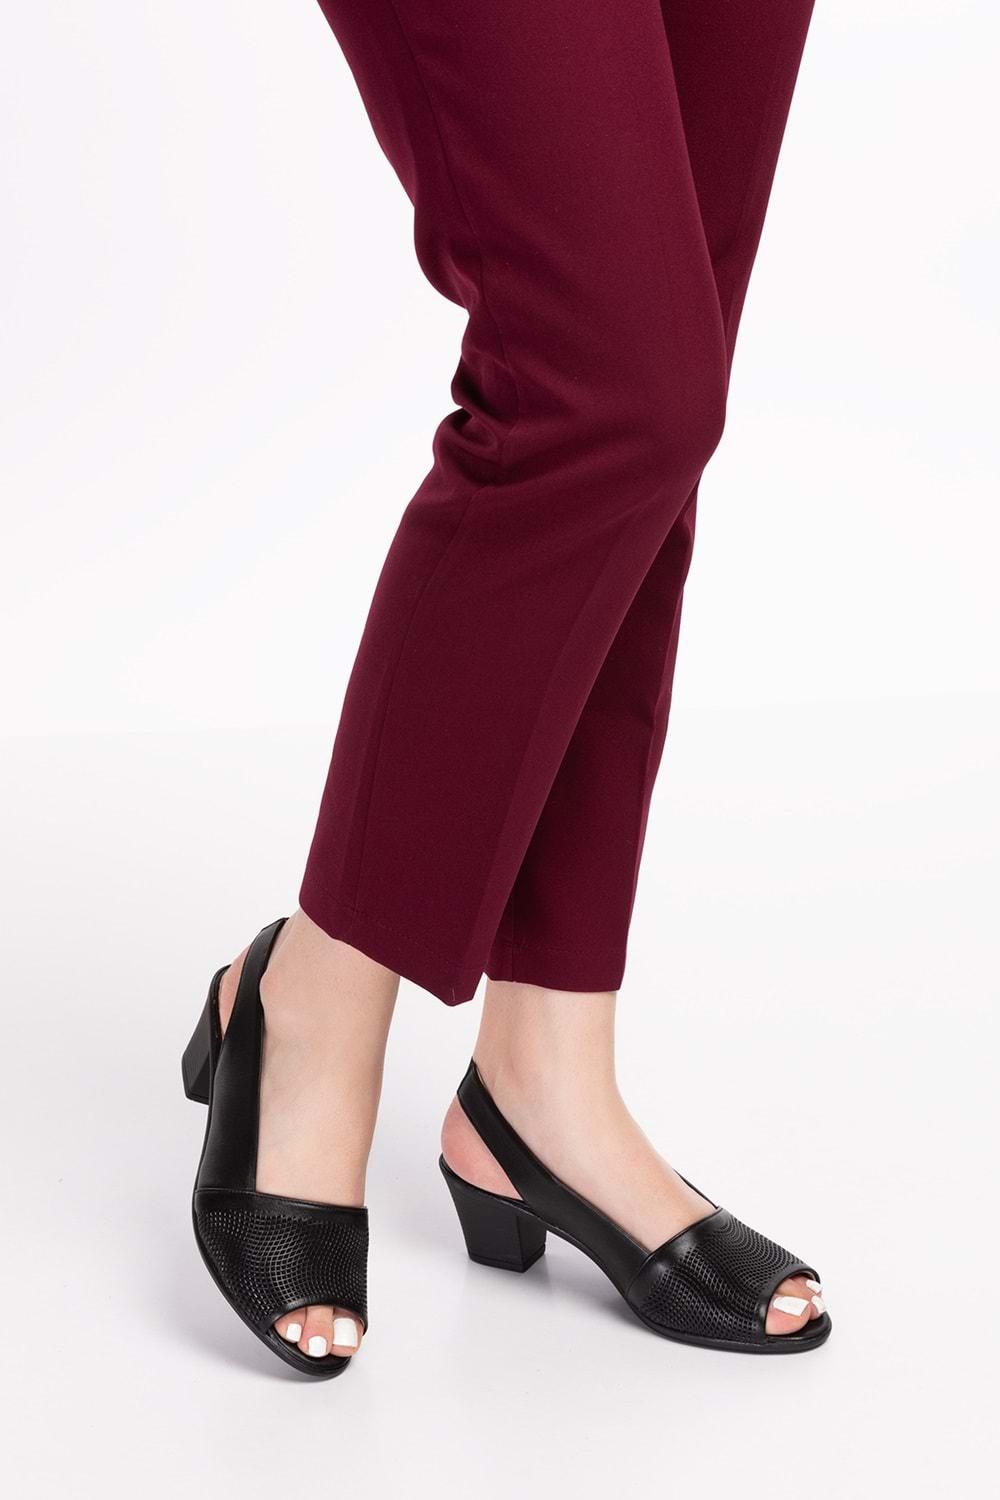 Gondol Kadın Hakiki Deri Klasik Topuklu Ayakkabı vdt.262 - Siyah - 34